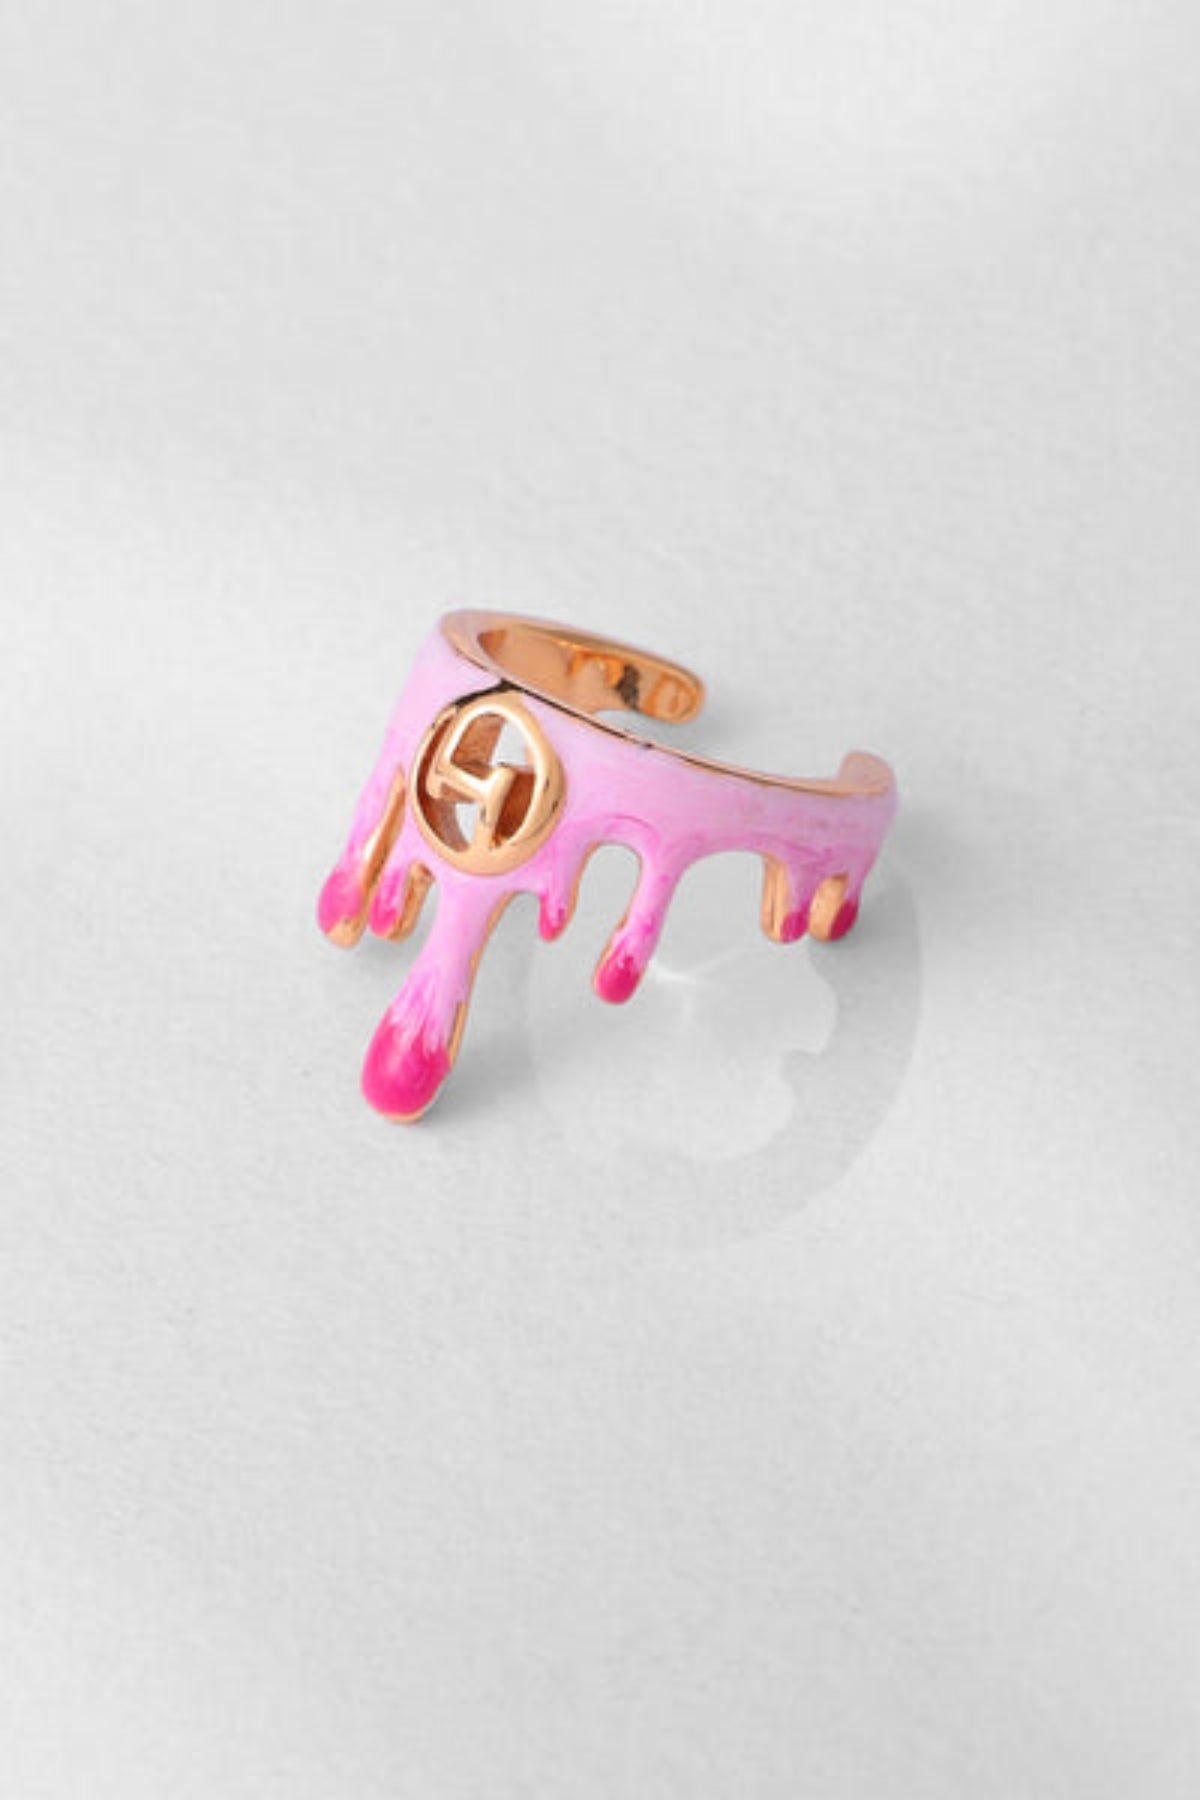 Midi Ring in Bubblegum Pink